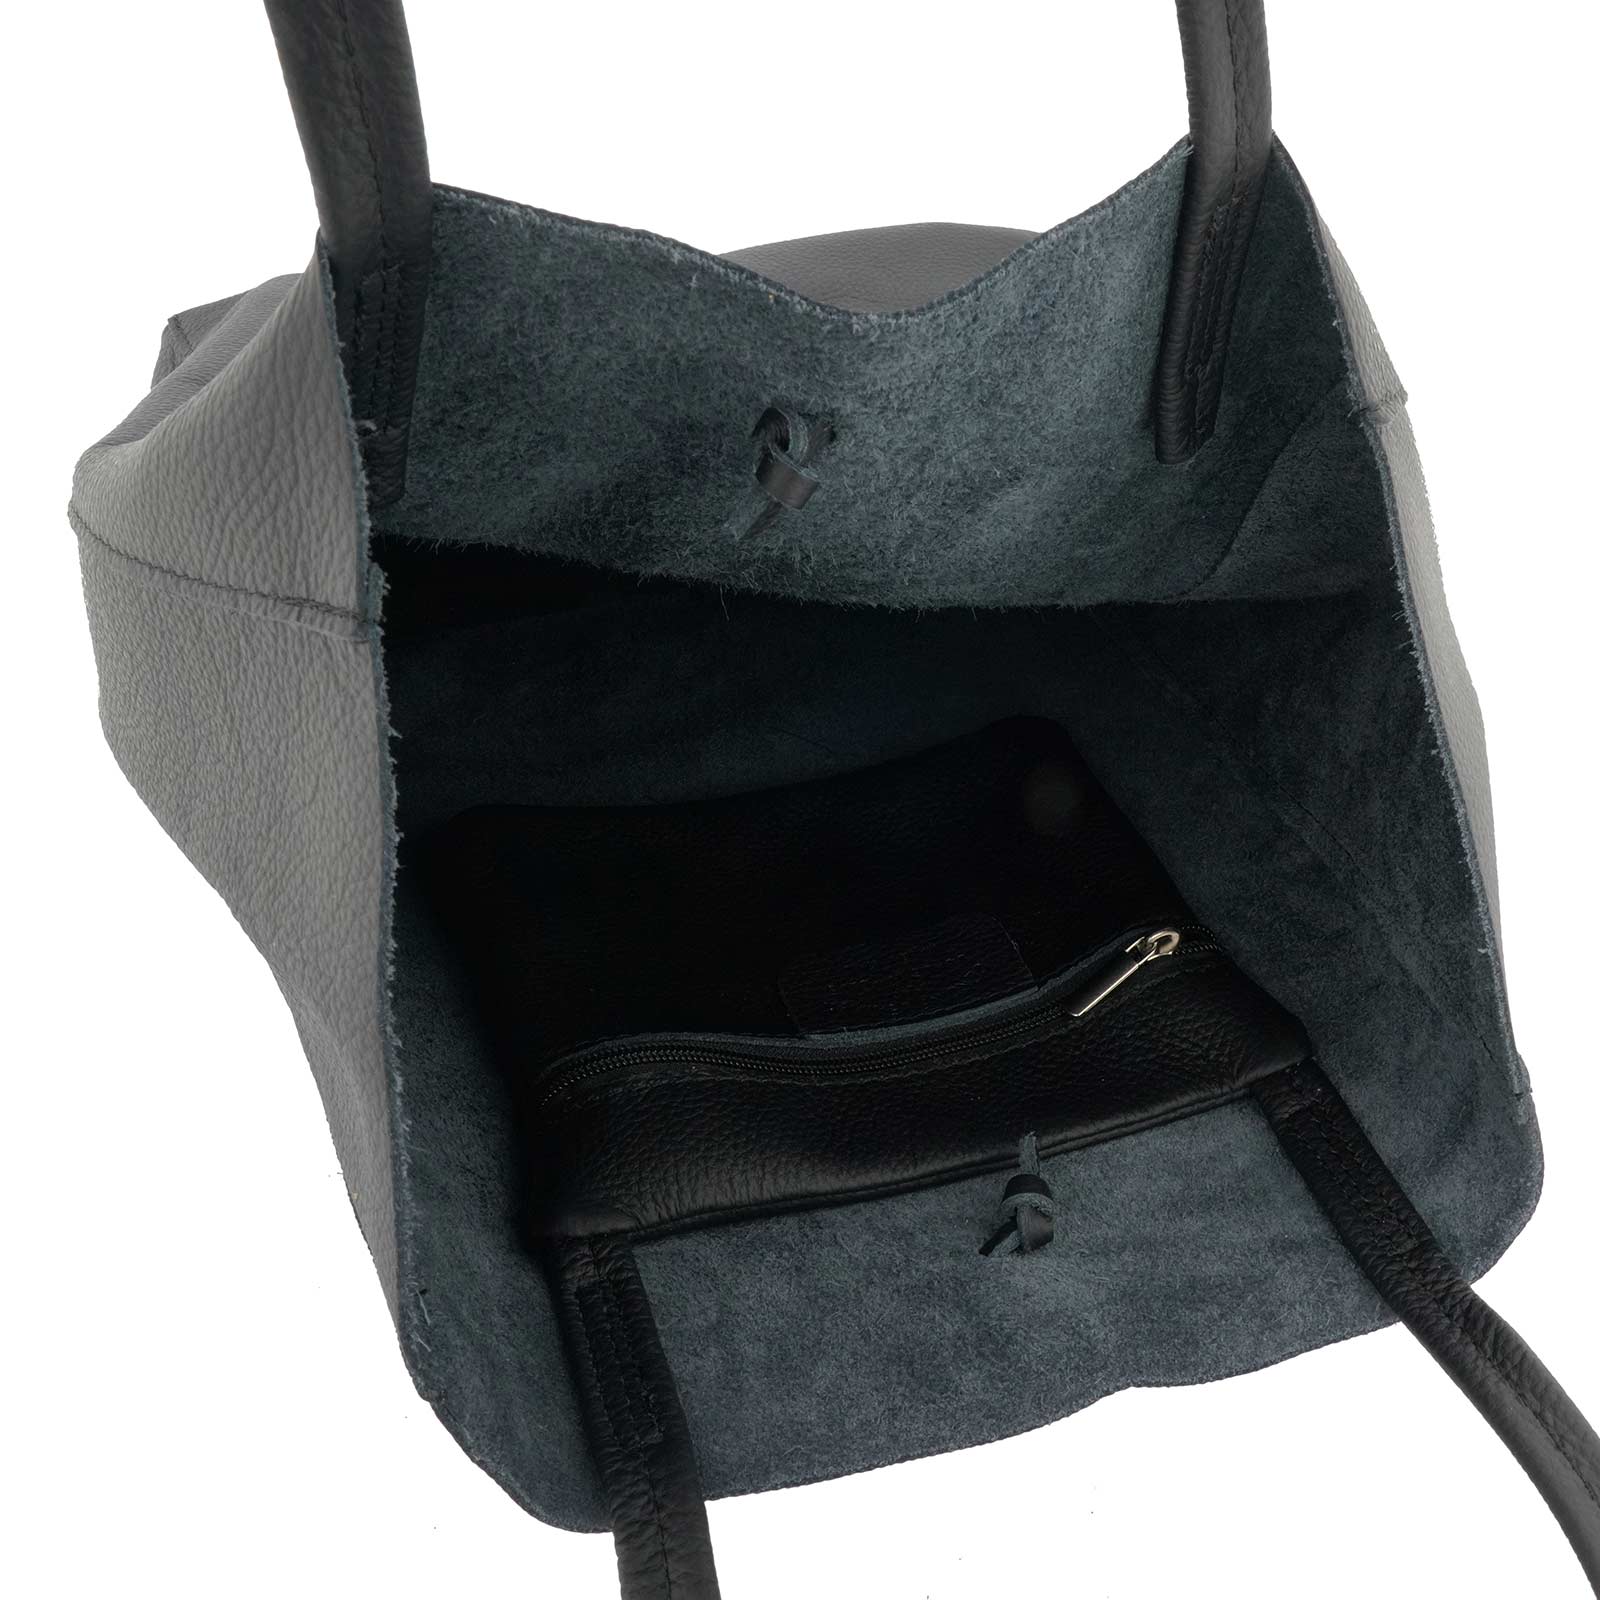 Fioretta Italian Genuine Leather Shopper Bag Carryall Handbag Shoulder Bag Tote for Women - Black